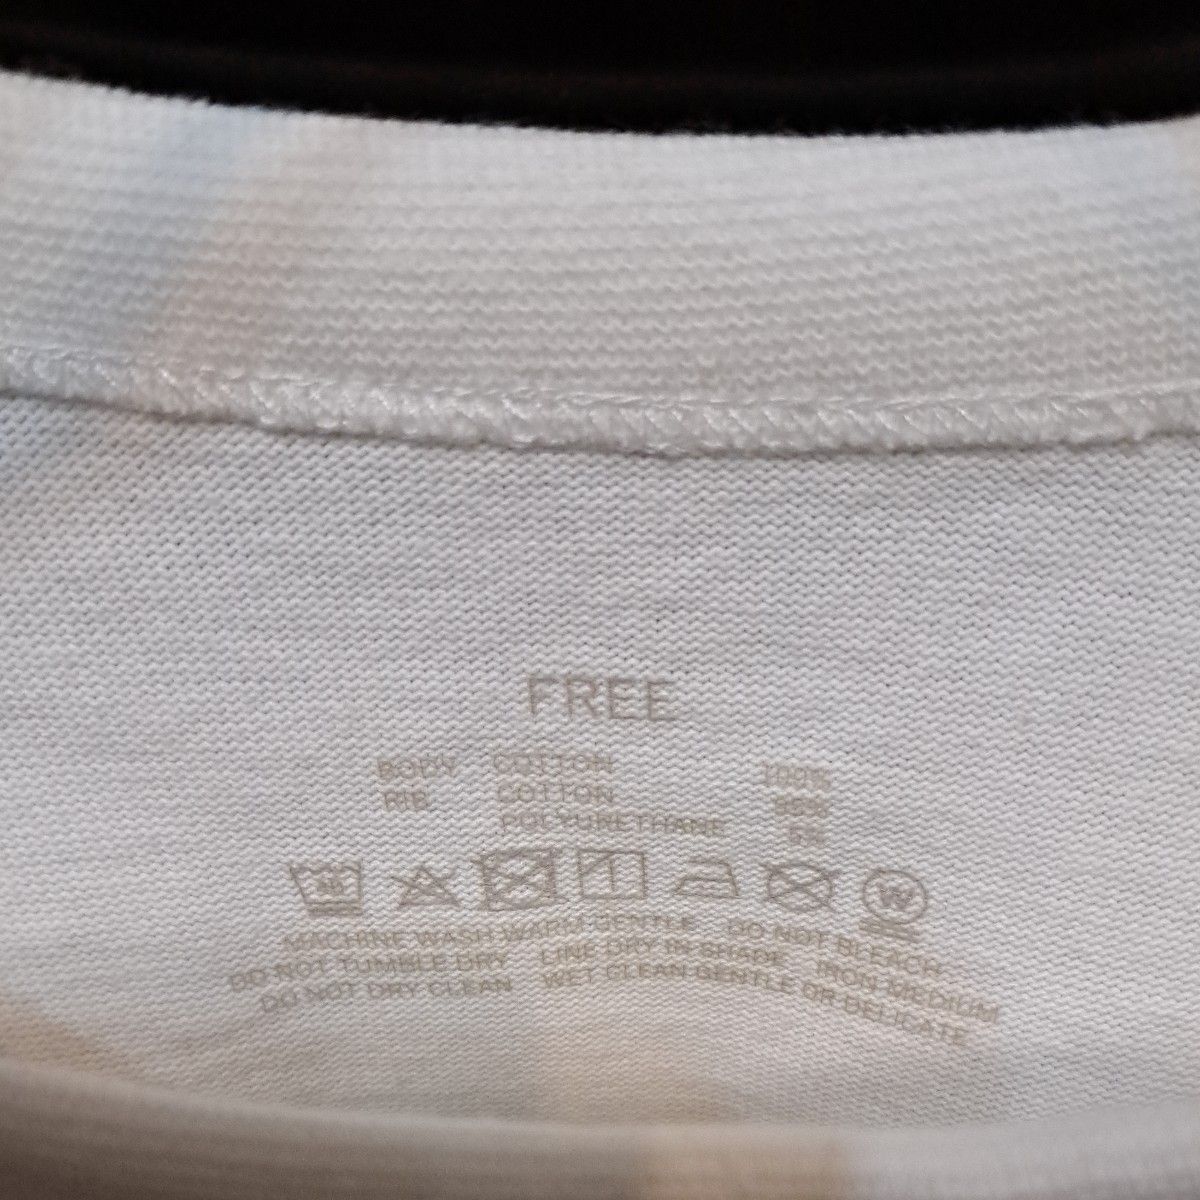 ヘビーオンス11.5 カレッジ ロゴ スウェット Tシャツ【フリーサイズ】ボストン Tシャツ 